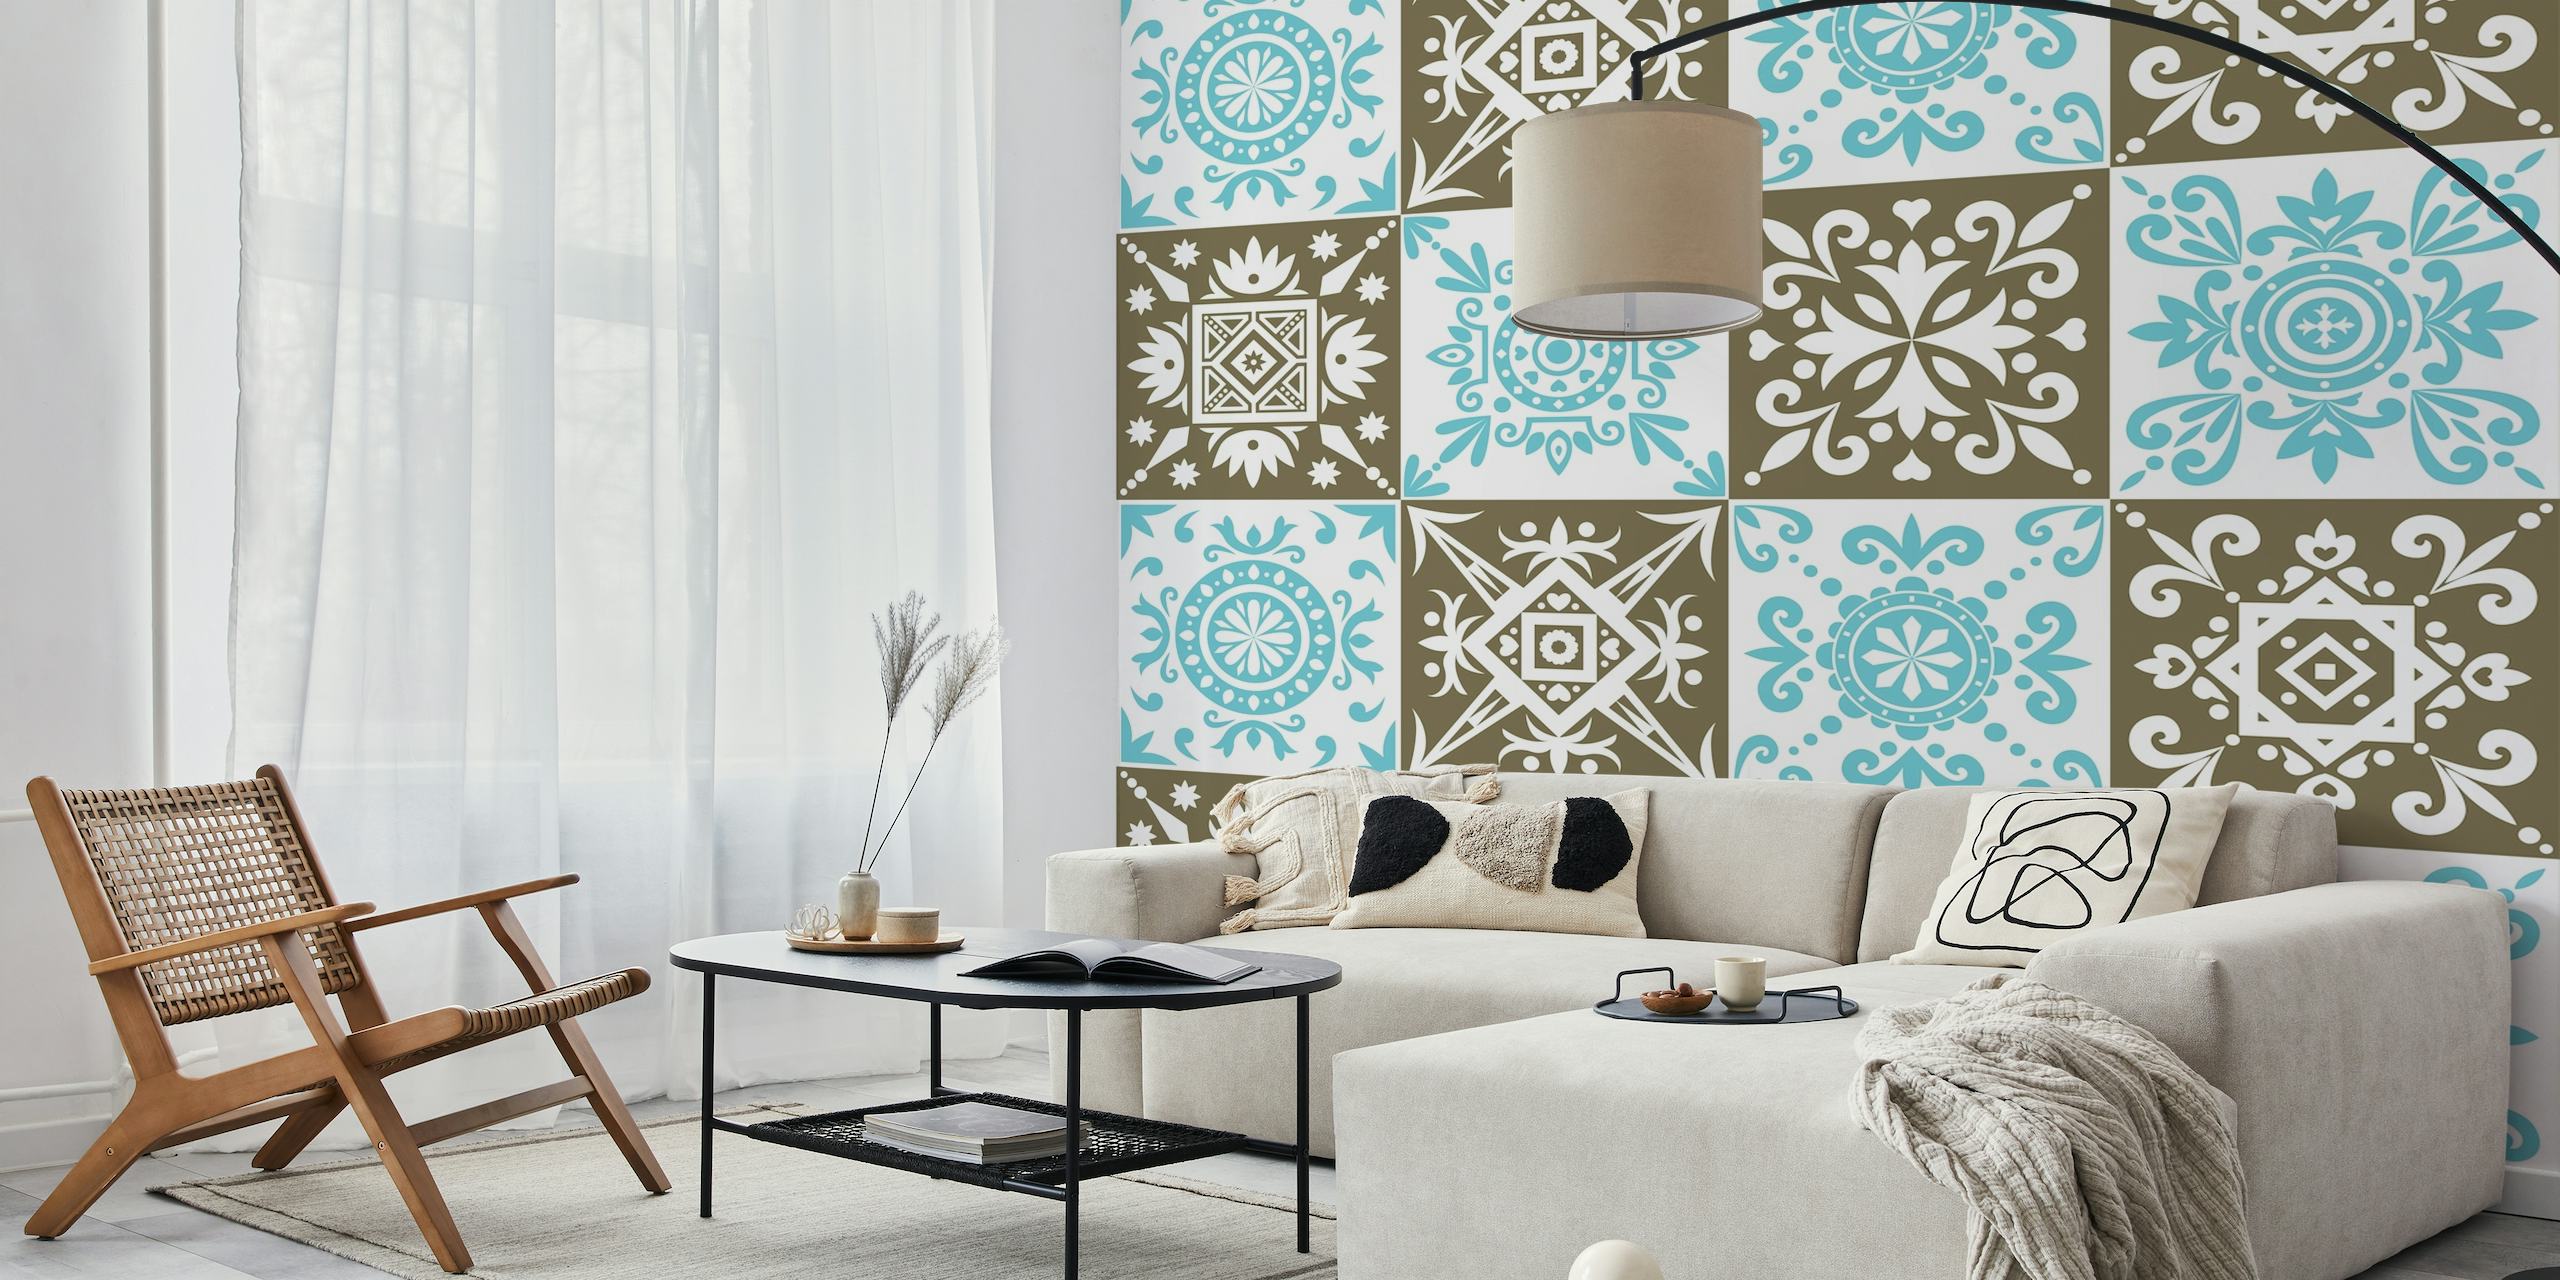 Fotomural de pared con motivos geométricos marroquíes con diseños tradicionales en azul y marrón